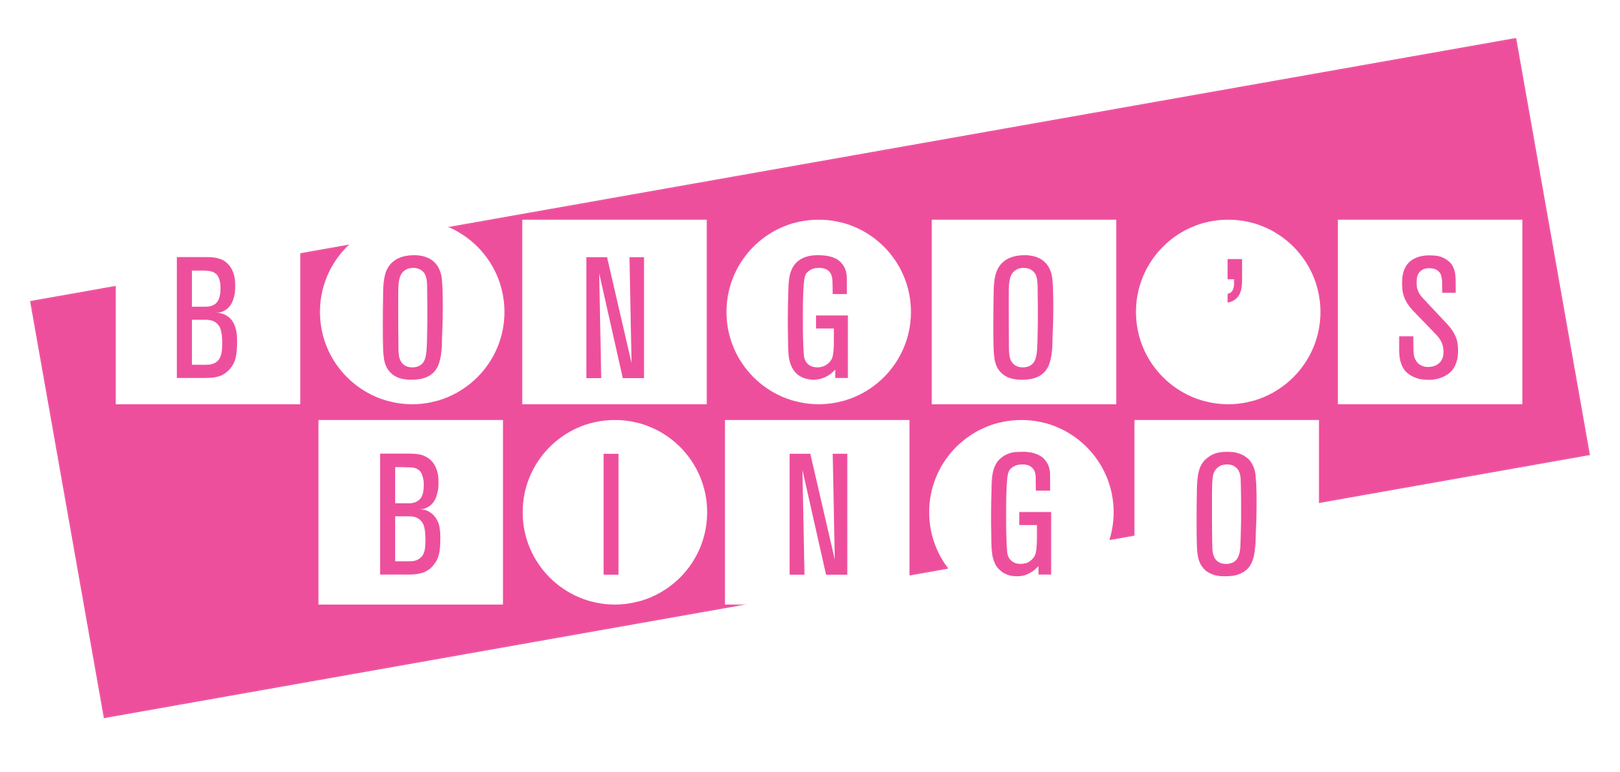 www.bongosbingo.co.uk